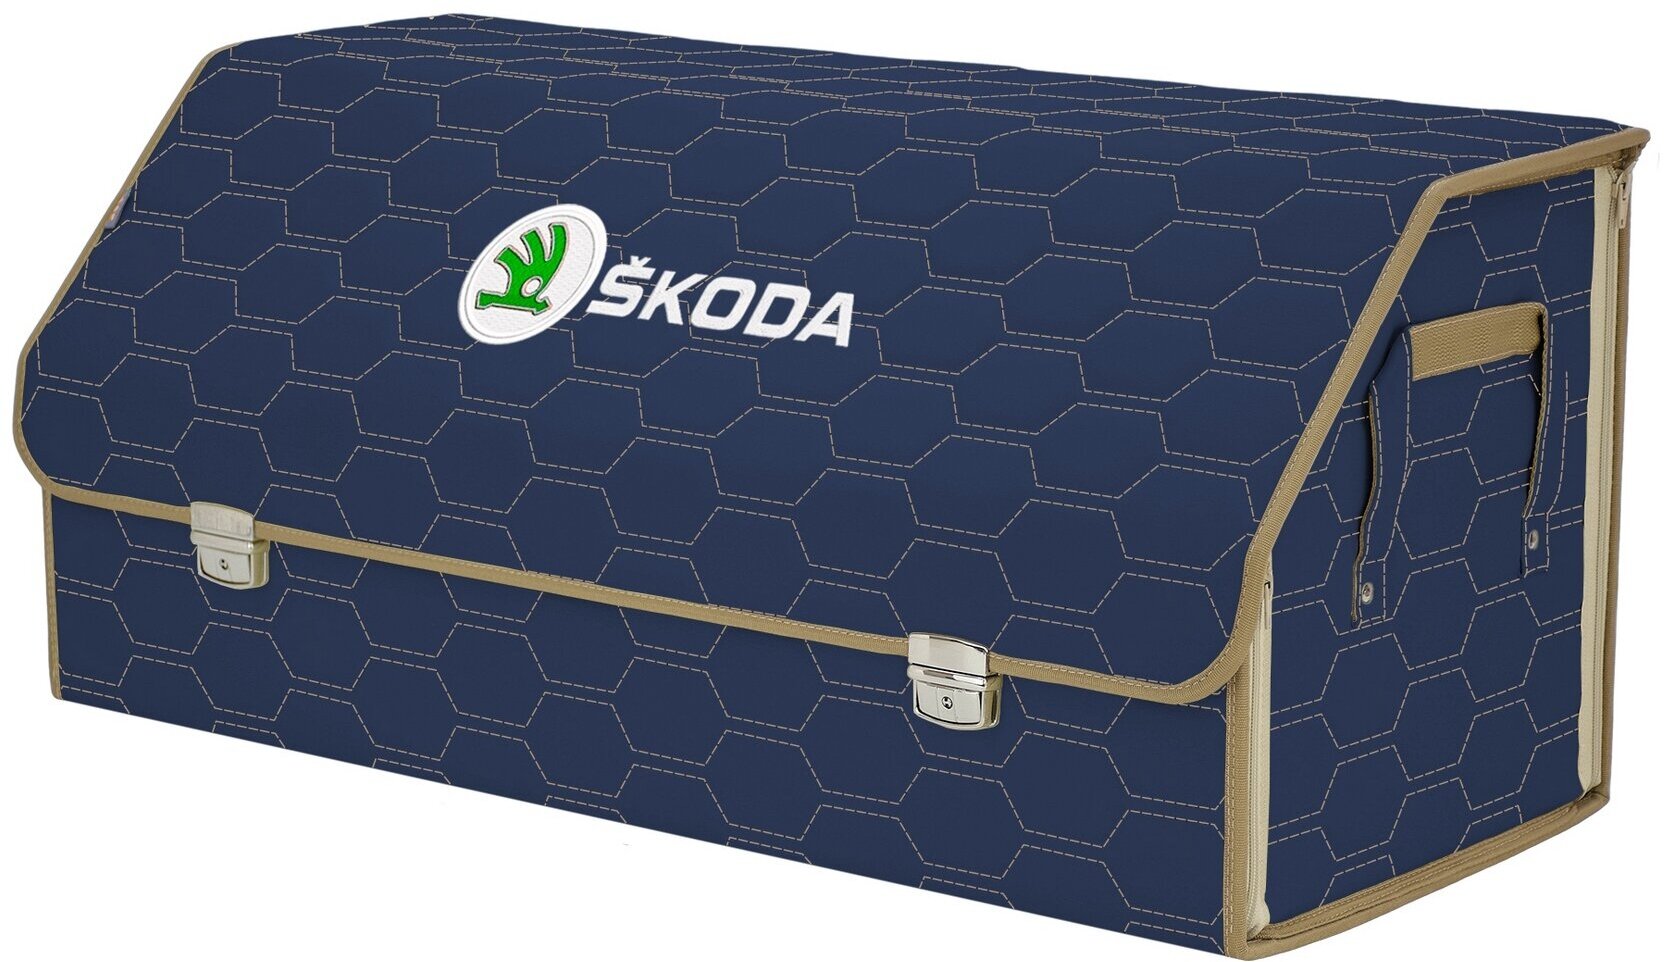 Органайзер-саквояж в багажник "Союз Премиум" (размер XXL). Цвет: синий с бежевой прострочкой Соты и вышивкой Skoda (Шкода).